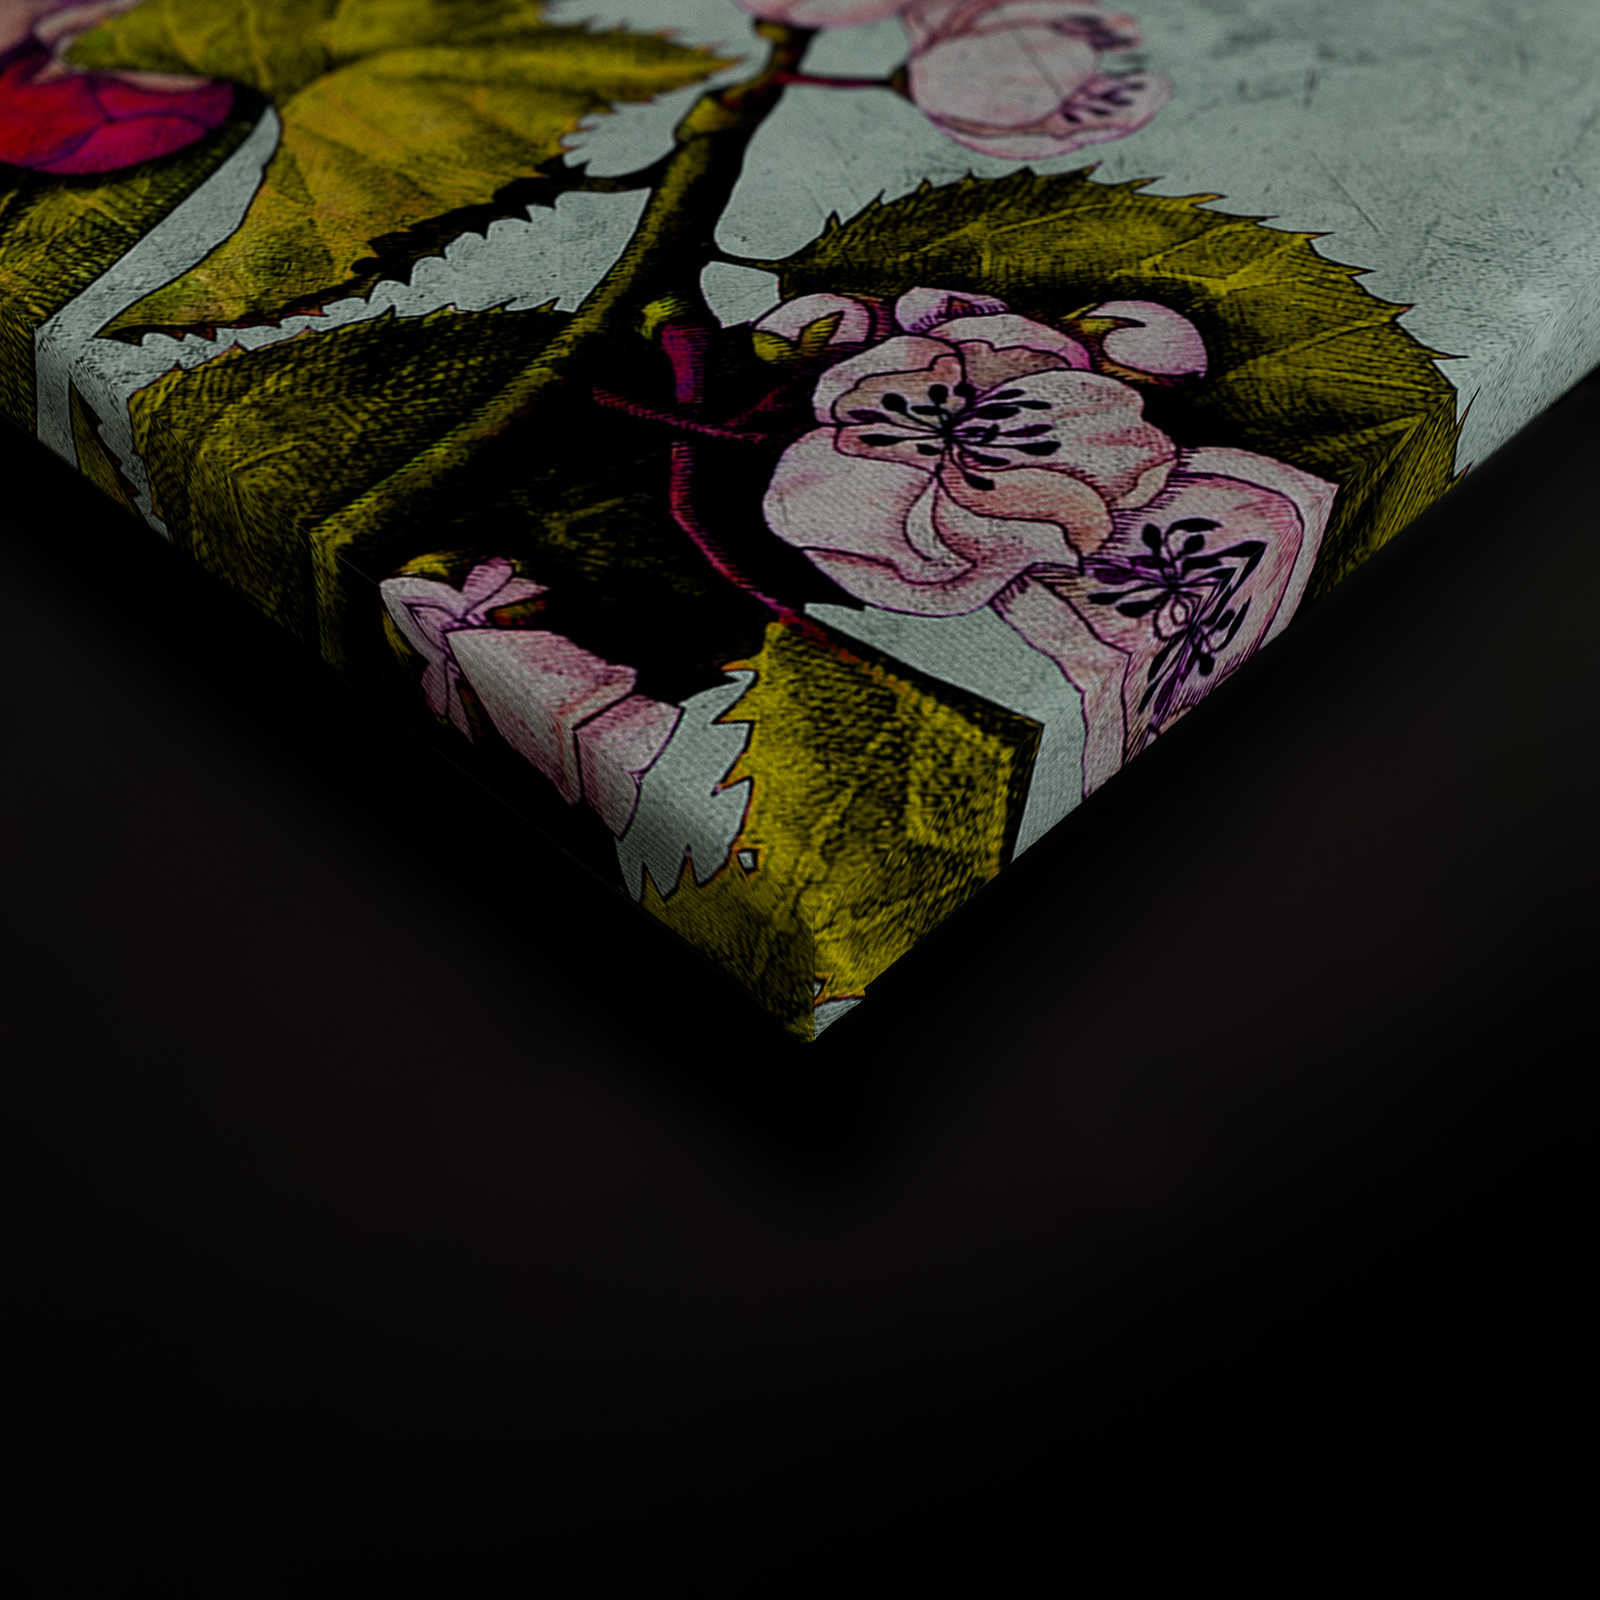             Tropical Passion 2 - Leinwandbild mit Blüten und Knospen – 1,20 m x 0,80 m
        